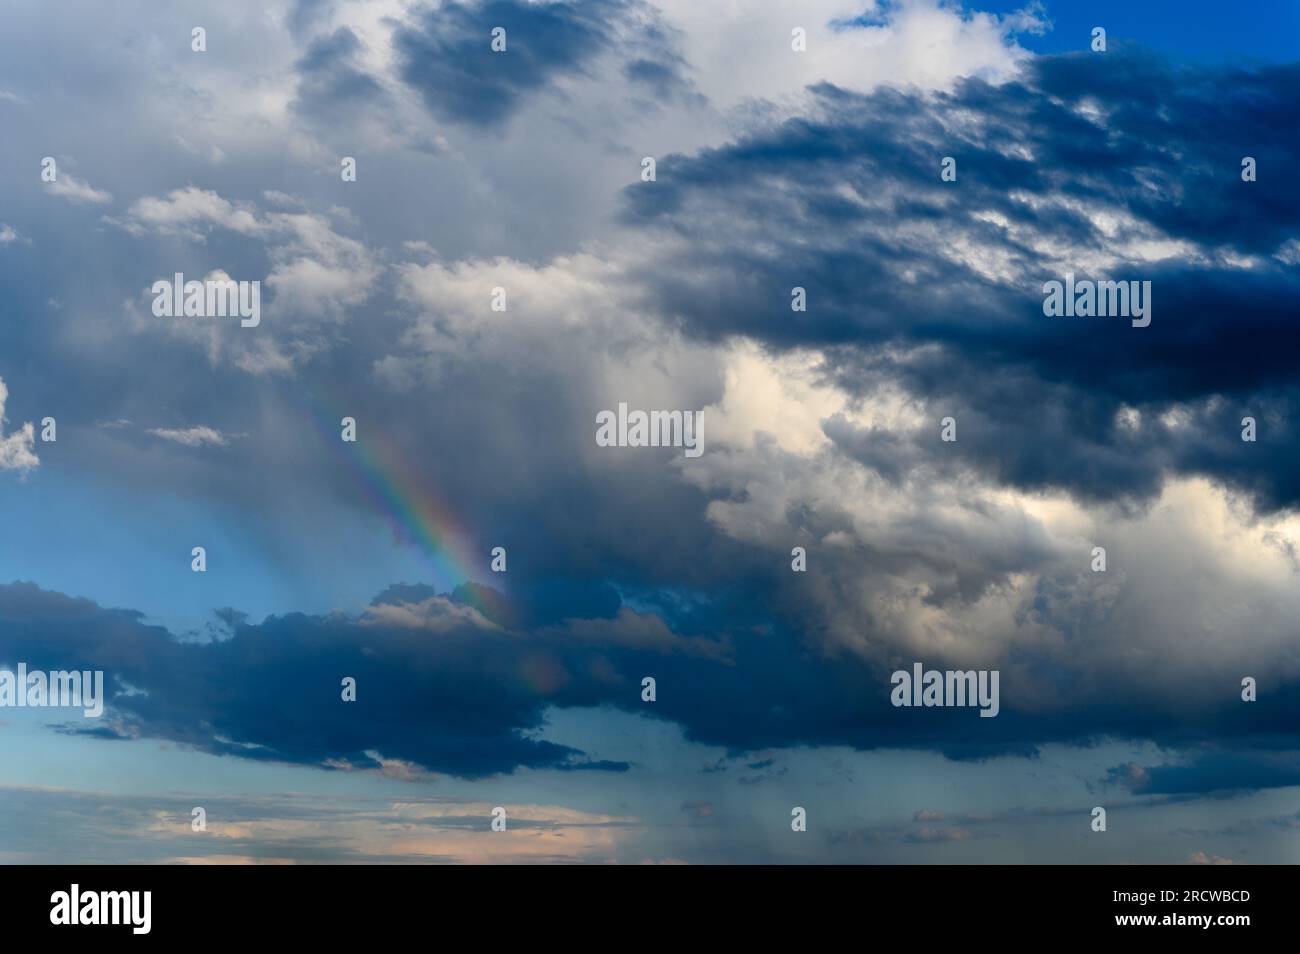 Incroyable arc-en-ciel lumineux sur fond d'un ciel orageux. Nuages d'orage, ciel bleu, arc-en-ciel après pluie dans le ciel. Banque D'Images